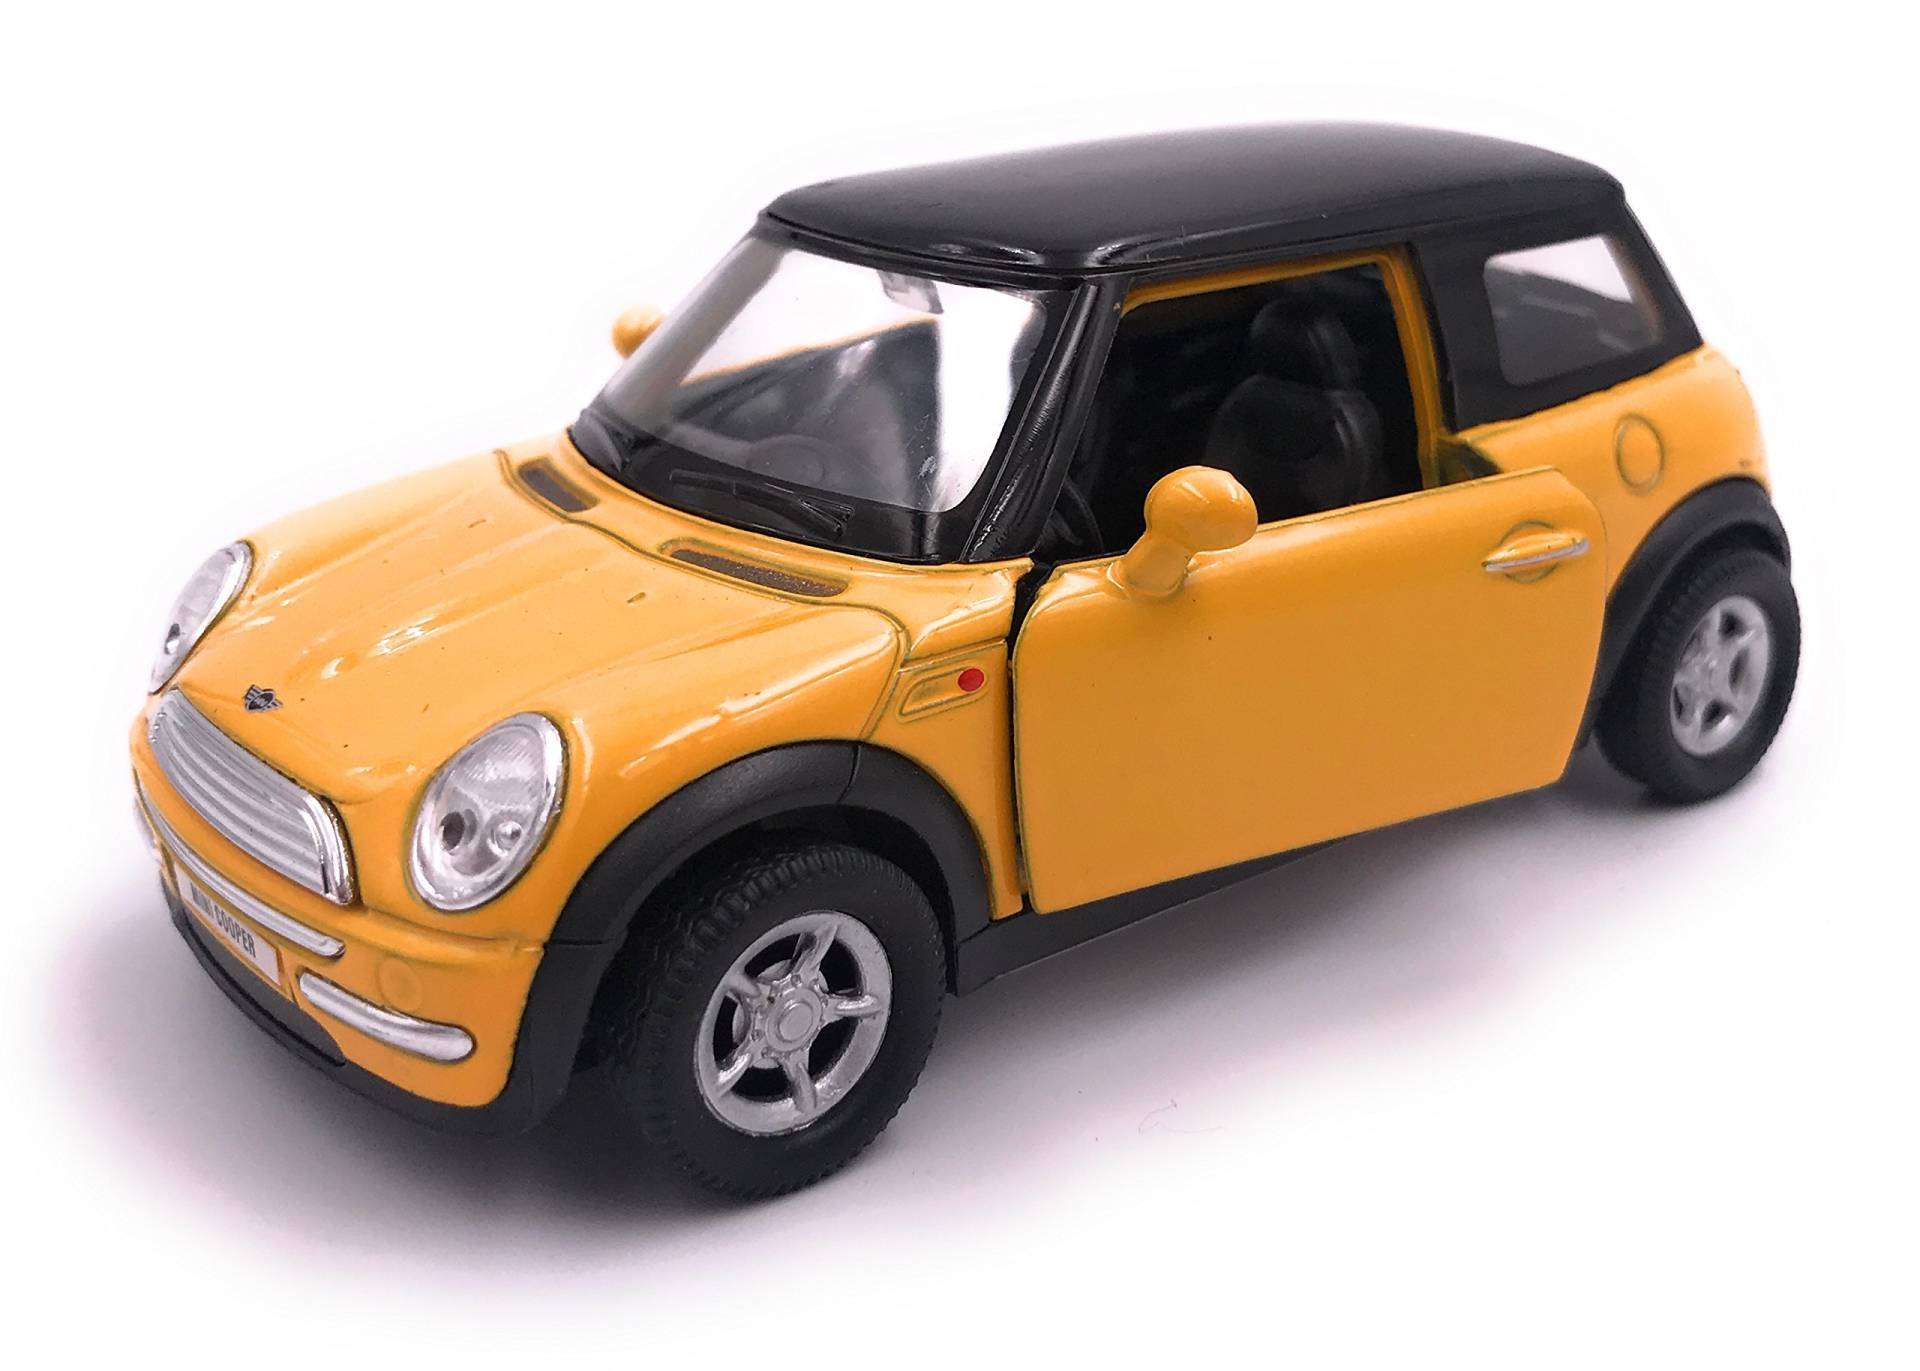 H-Customs Mini Modellauto Miniatur Auto Lizenzprodukt 1:34-1:39 Rot von H-Customs